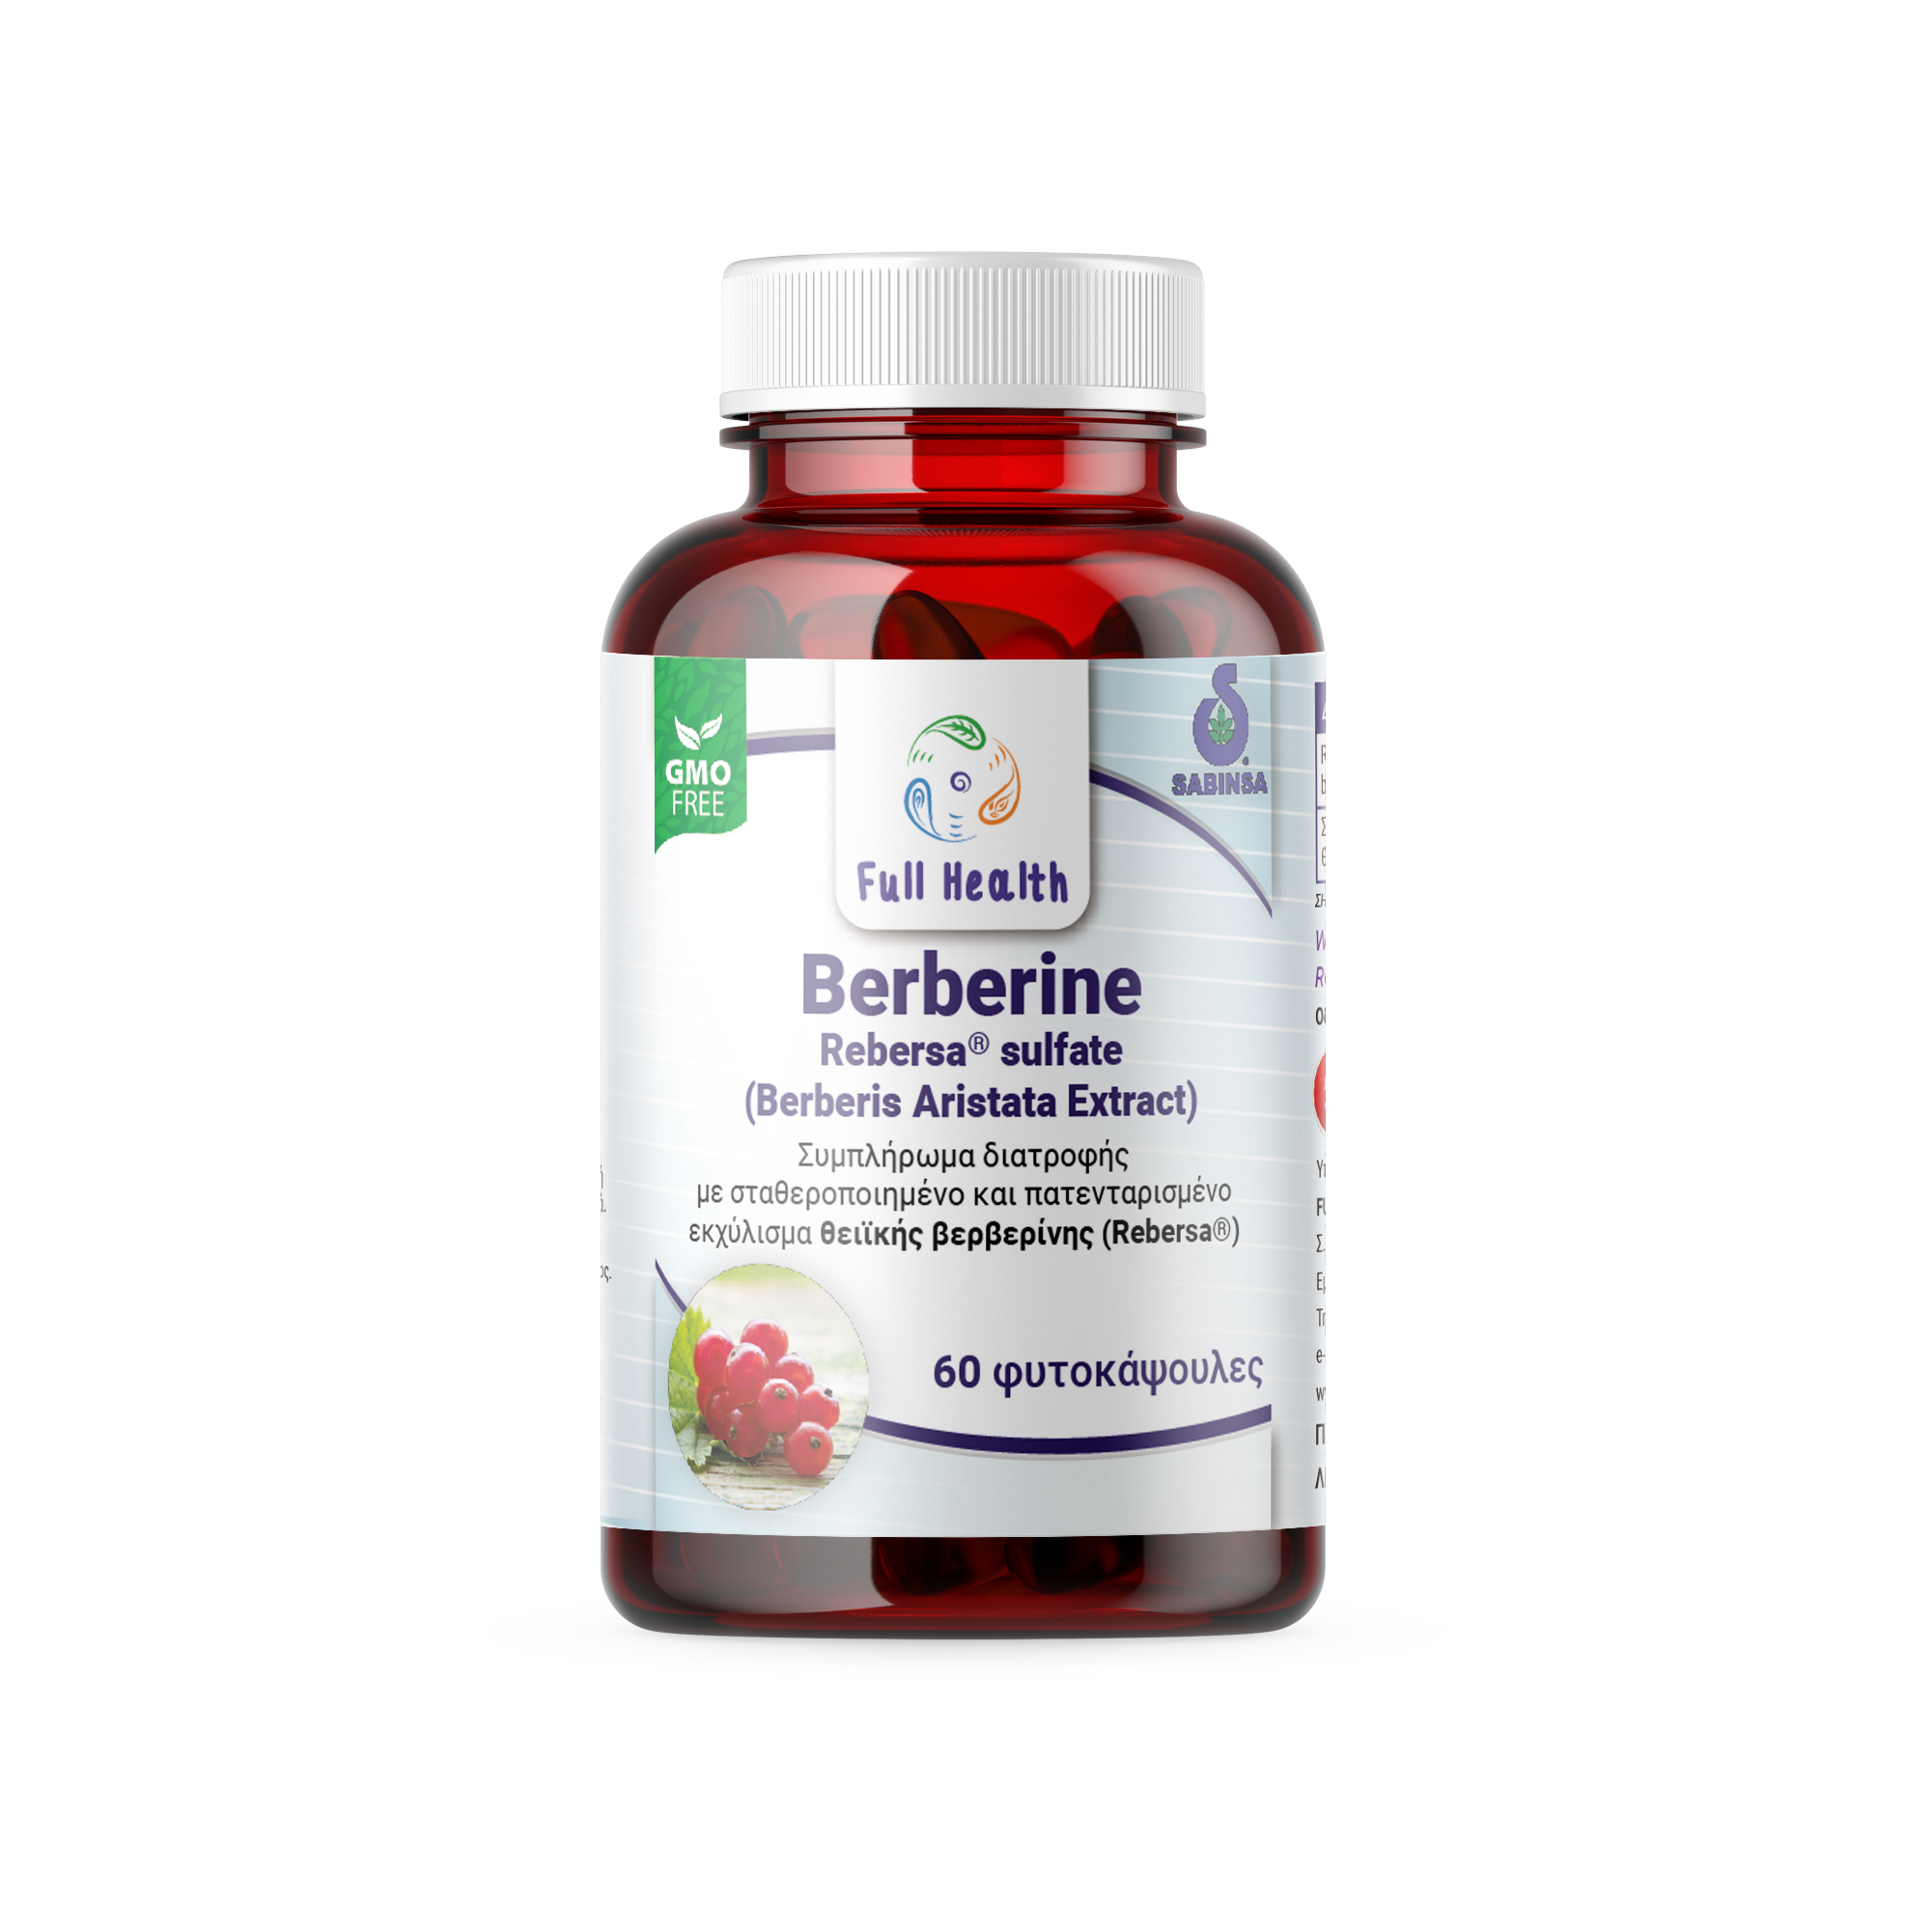 FULL HEALTH Berberine 400 mg 60 Vcaps (Συμπλήρωμα διατροφής με σταθεροποιημένο εκχύλισμα από τη ρίζα του φυτού berberis aristata που αποδίδει τη θειϊκή βερβερίνη της Rebersa)